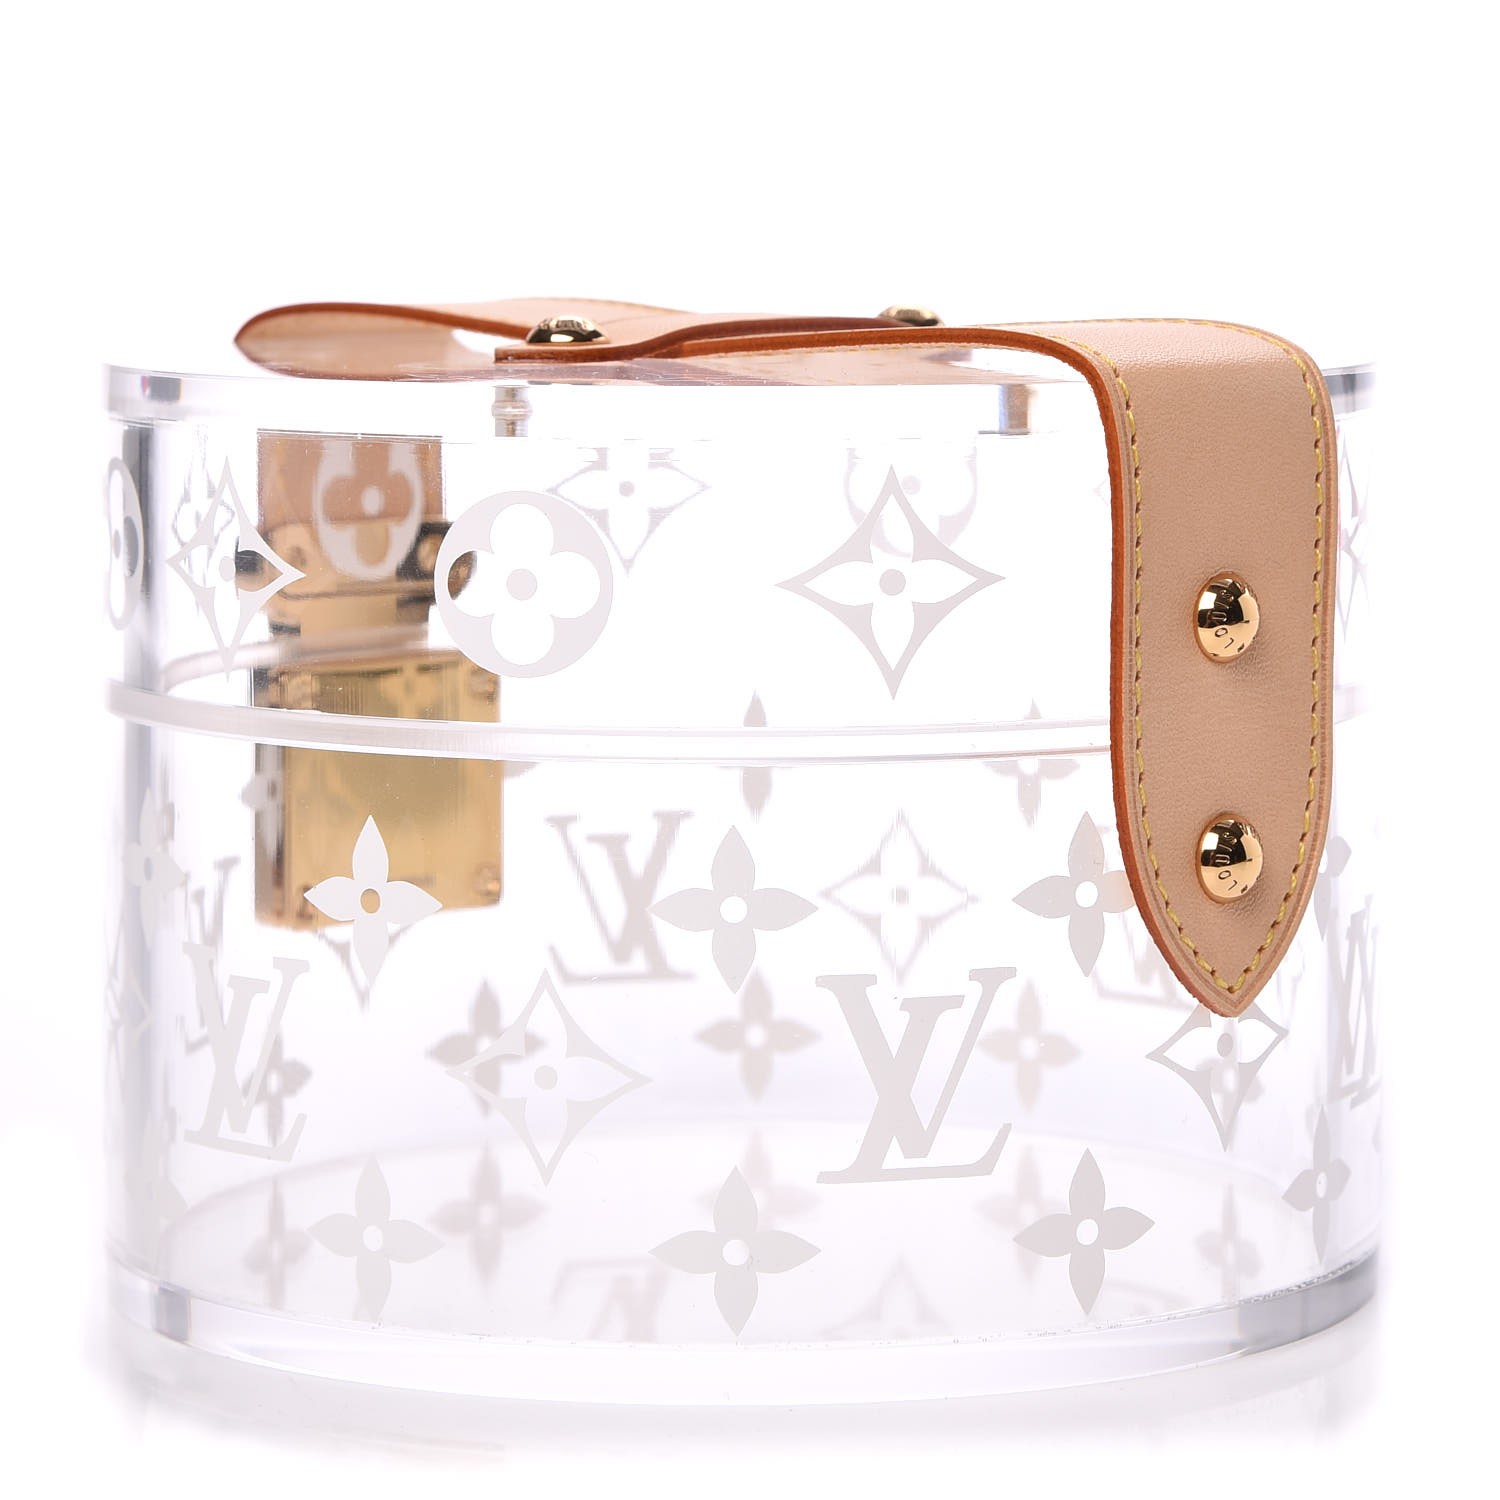 Lv box Scott bag! #lv #louisvuitton #boxscott #handbags #lvbags #lvbag  #itsmttdeal